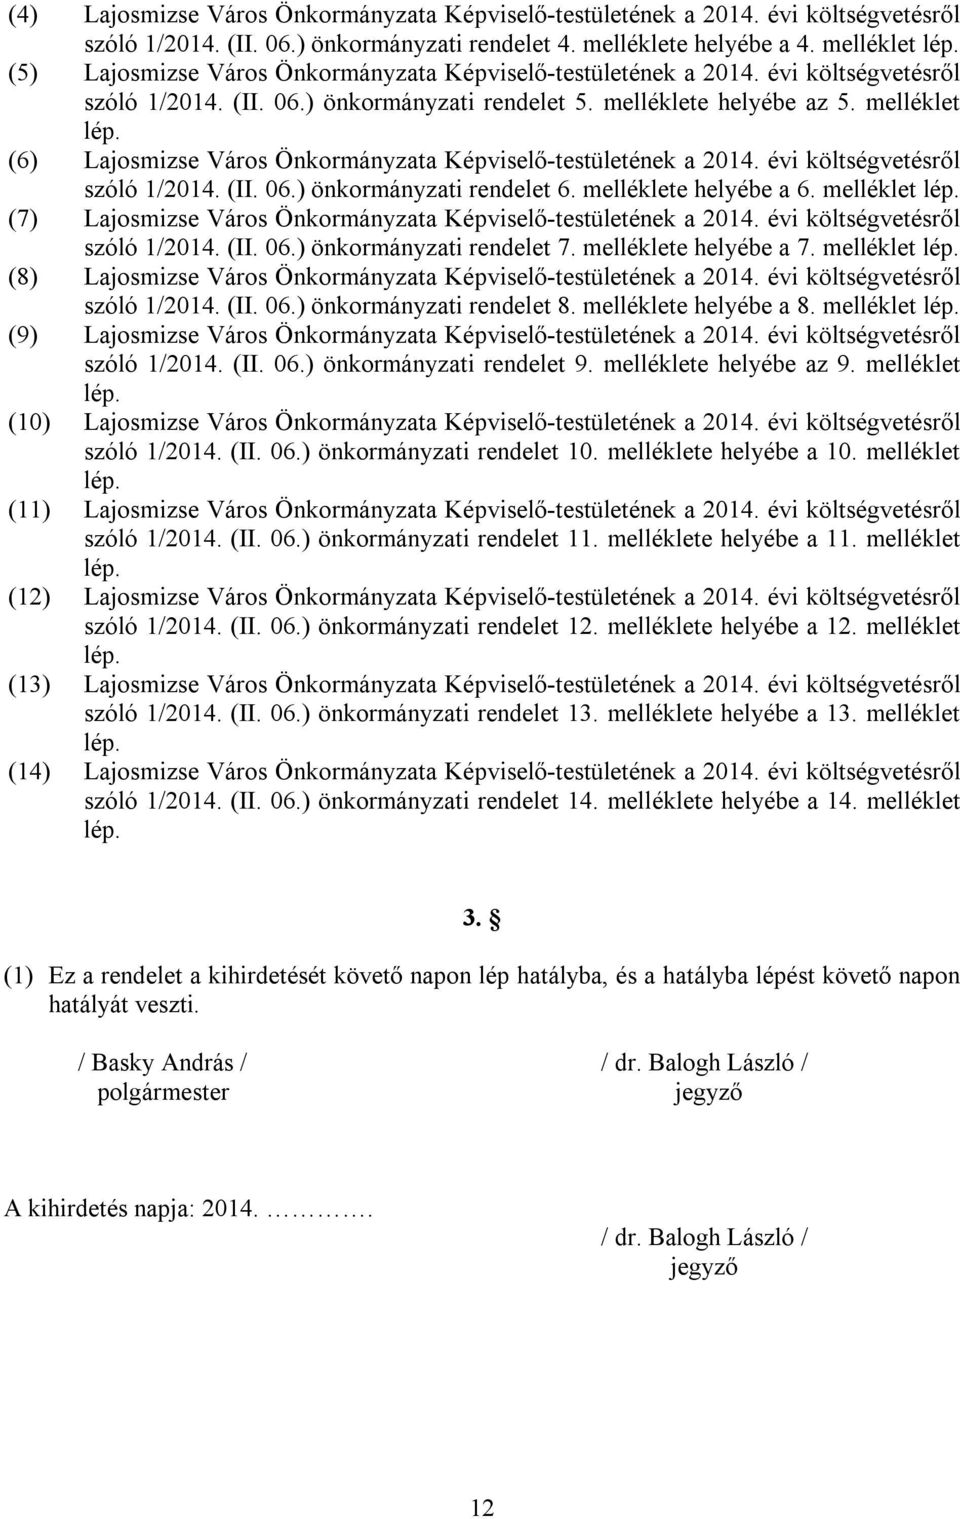 (6) Lajosmizse Város Önkormányzata Képviselő-testületének a 2014. évi költségvetésről szóló 1/2014. (II. 06.) önkormányzati rendelet 6. melléklete helyébe a 6. melléklet lép.